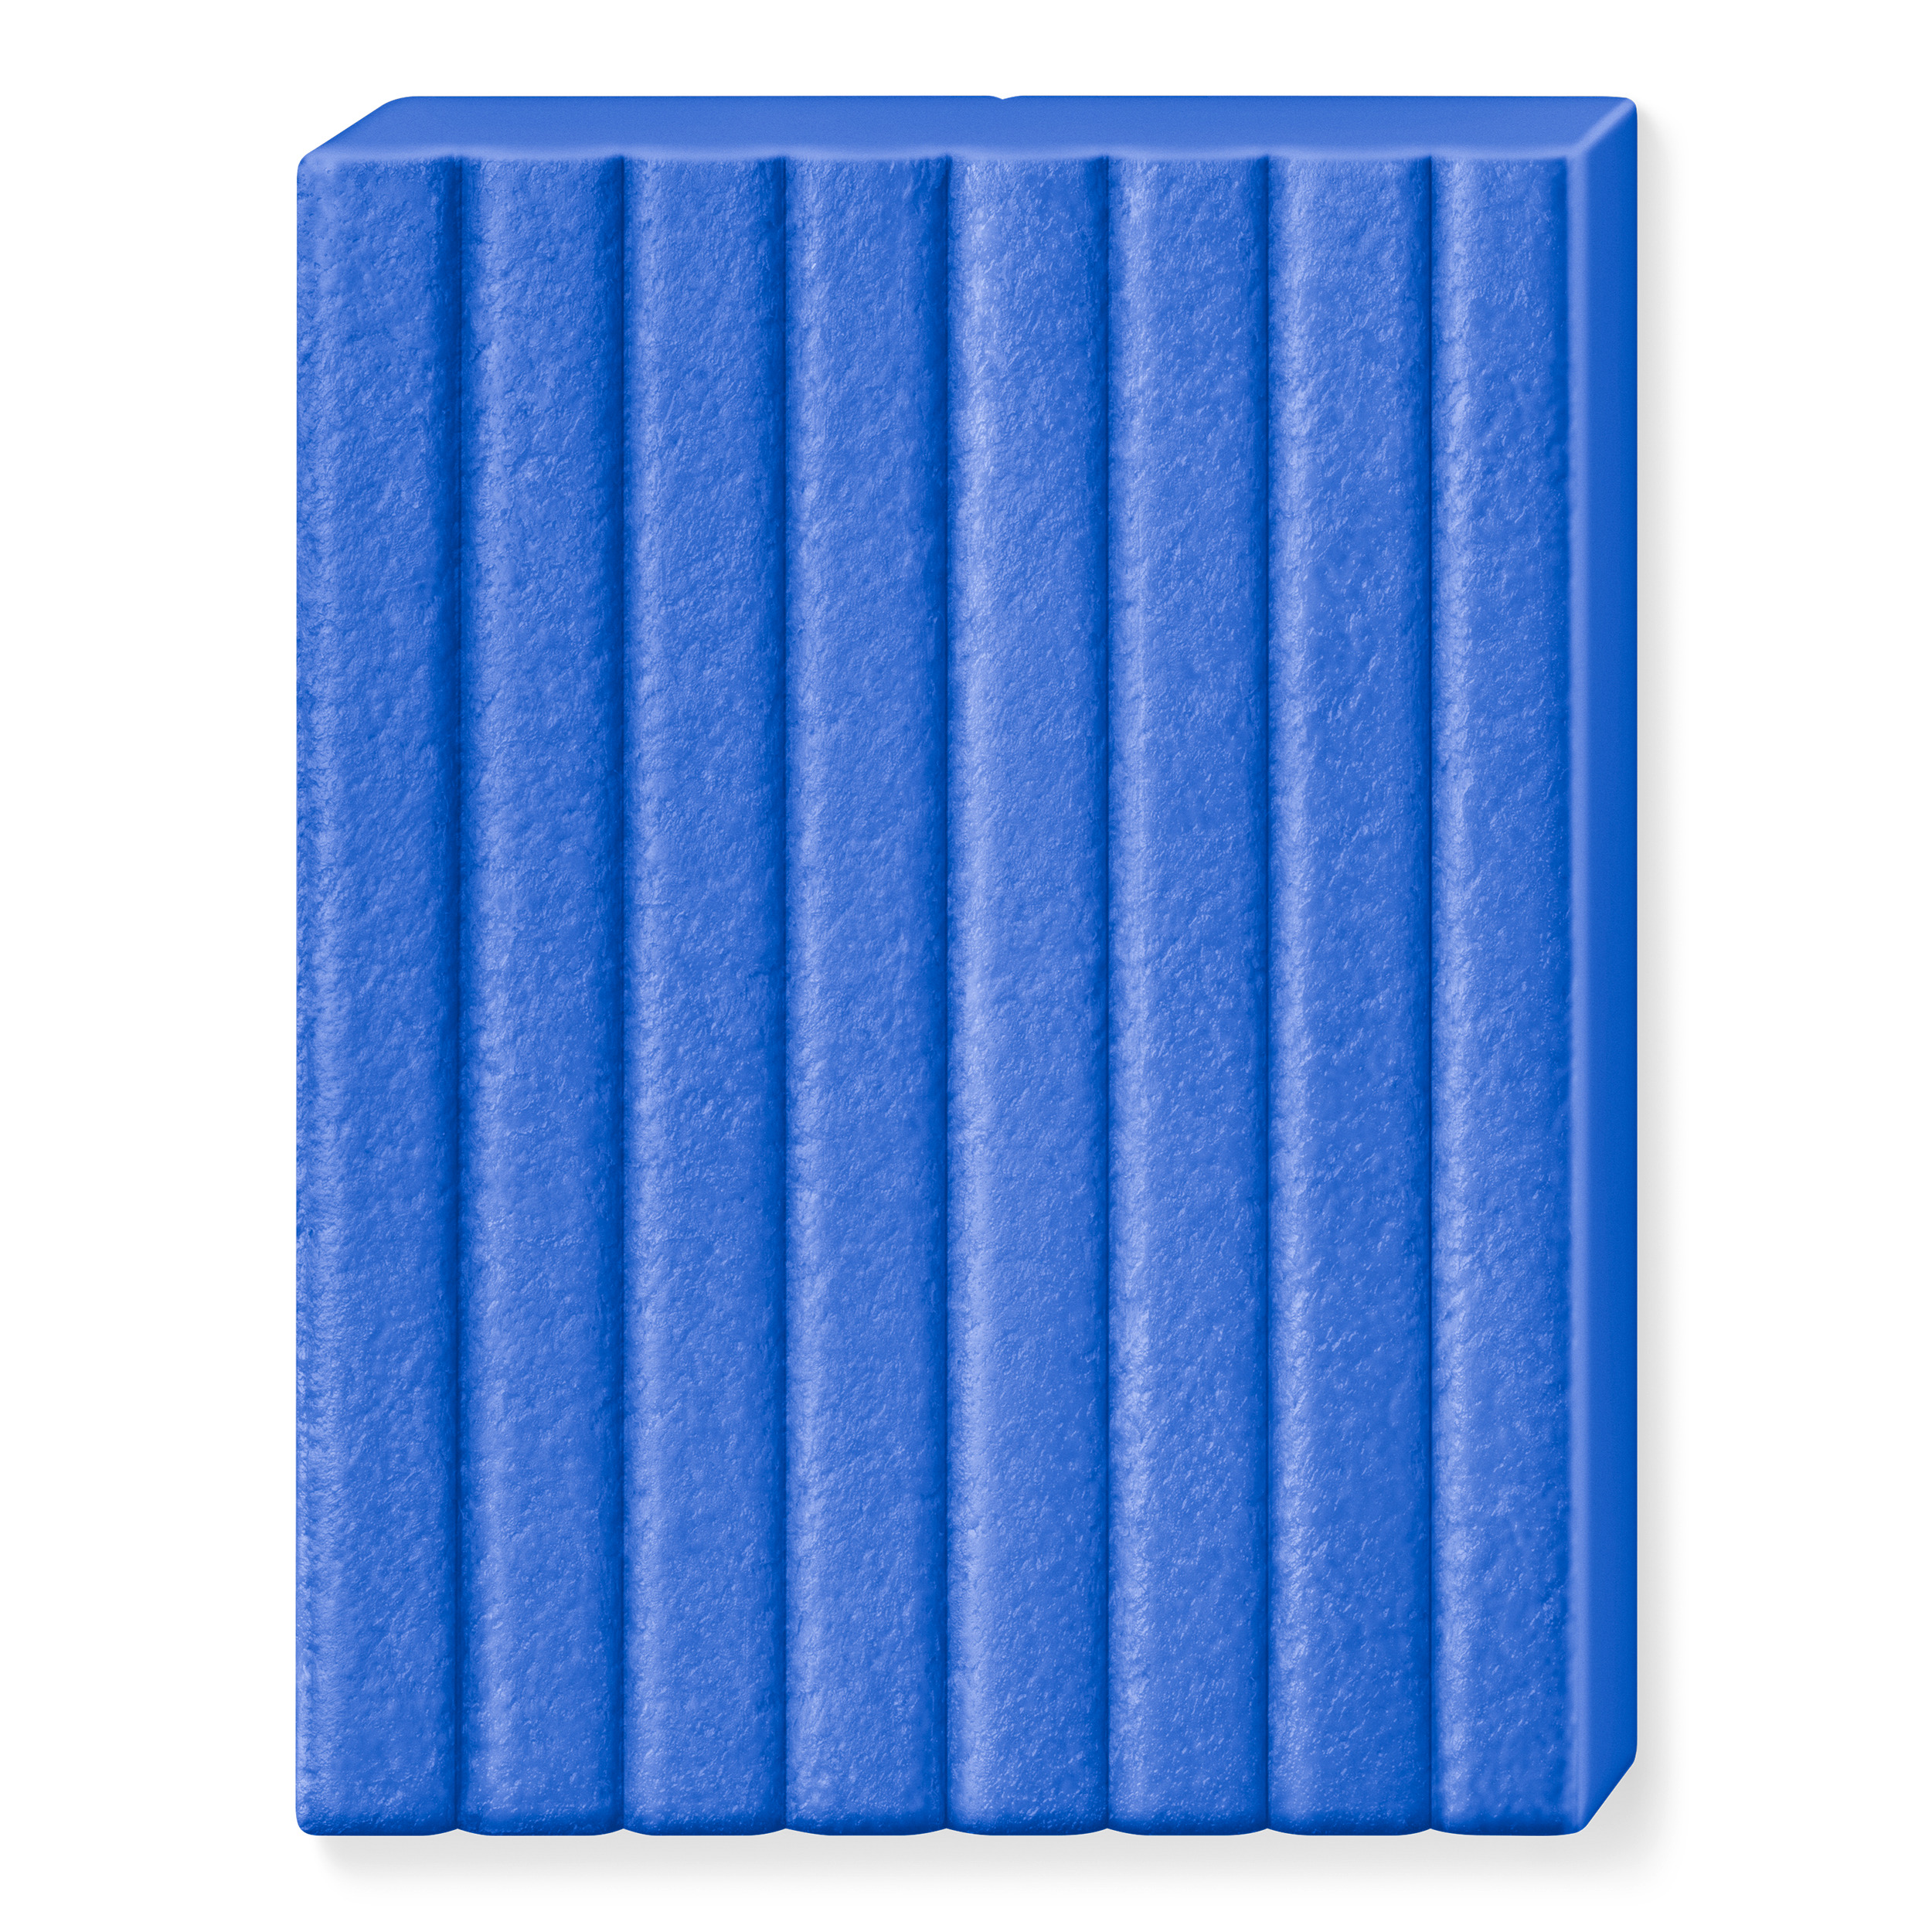 8019 309 FIMO Leather effect Indigo blå læder ler